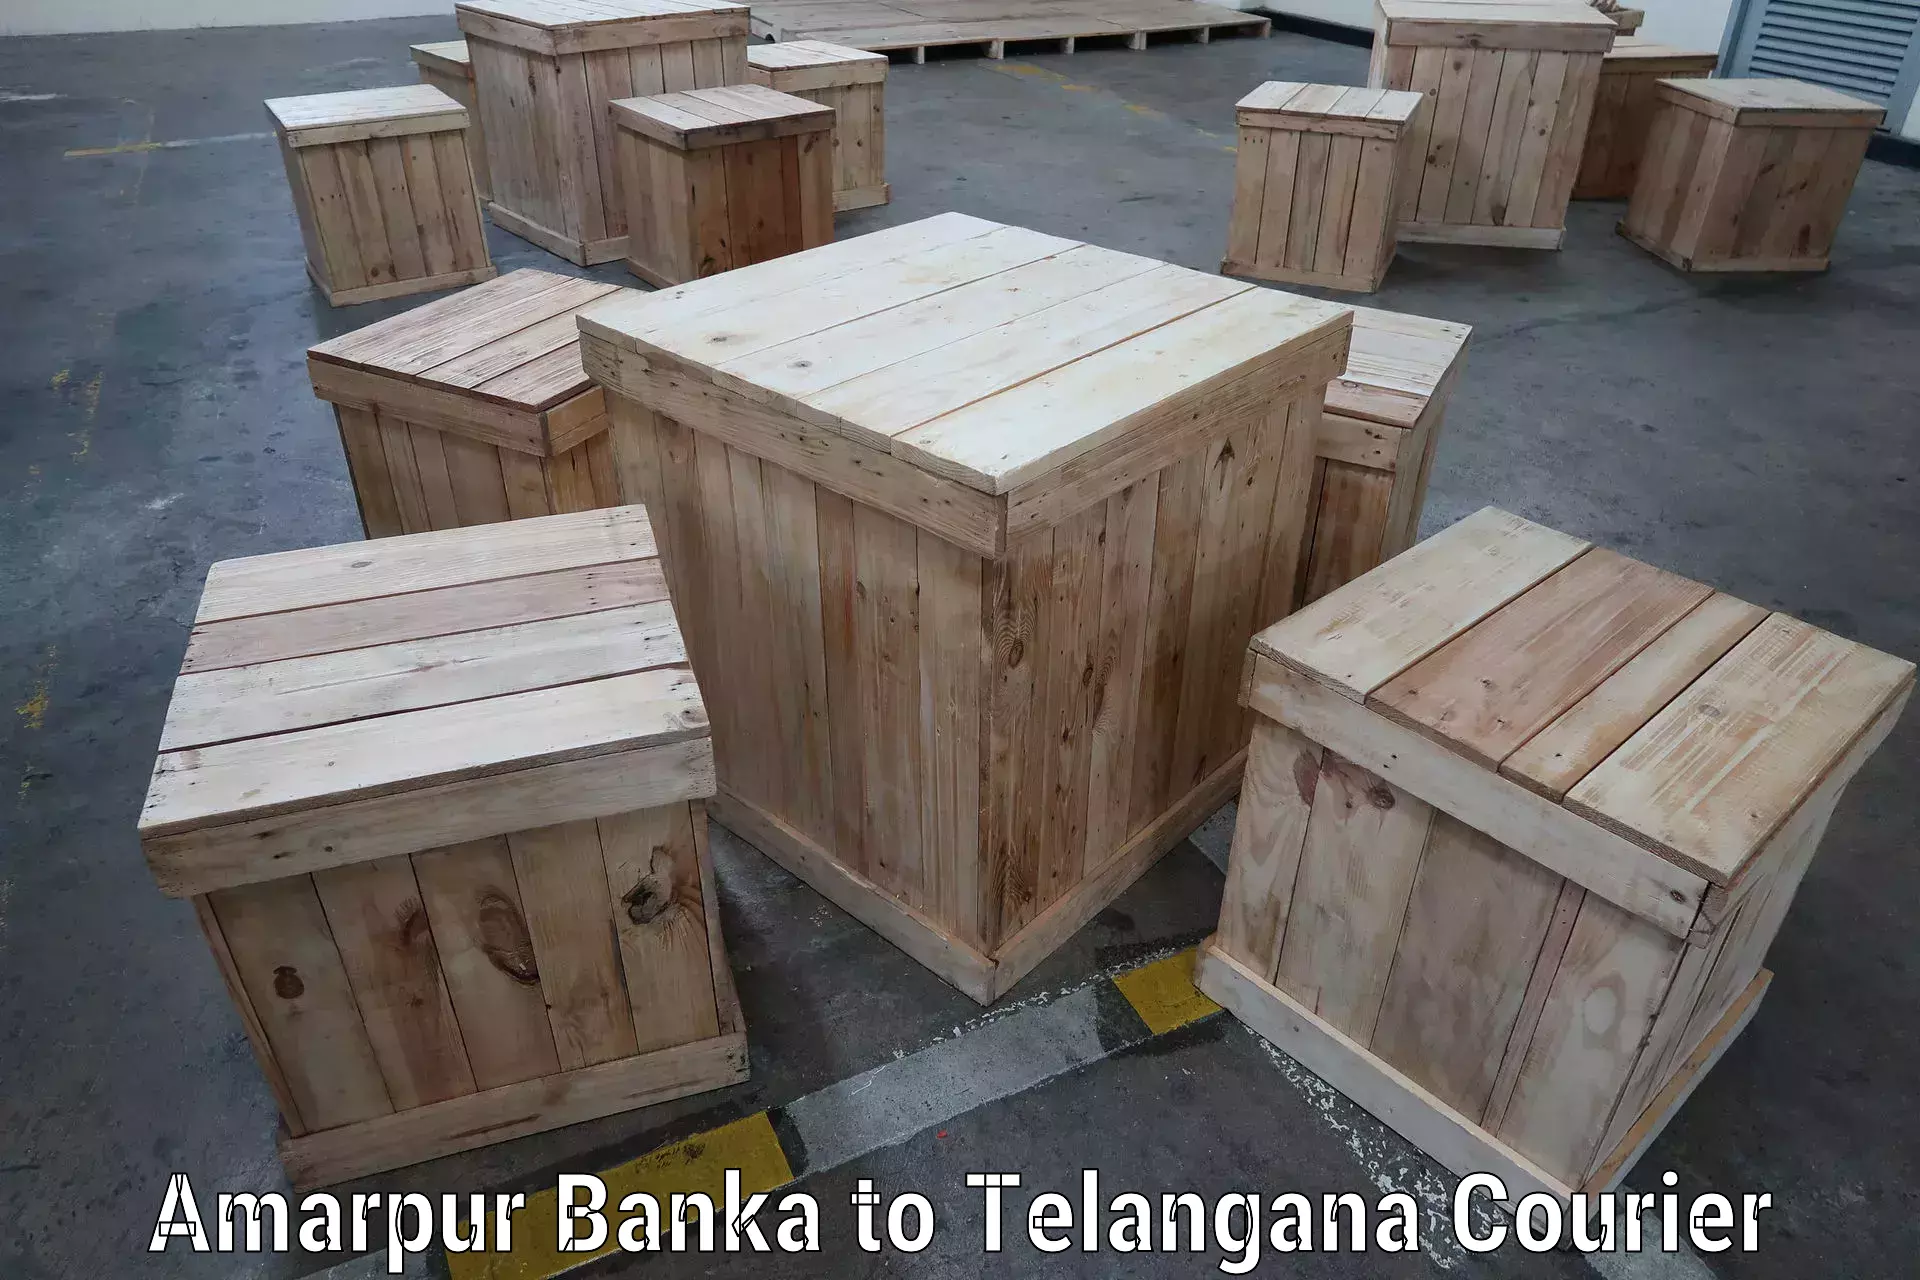 Reliable shipping partners Amarpur Banka to Pregnapur